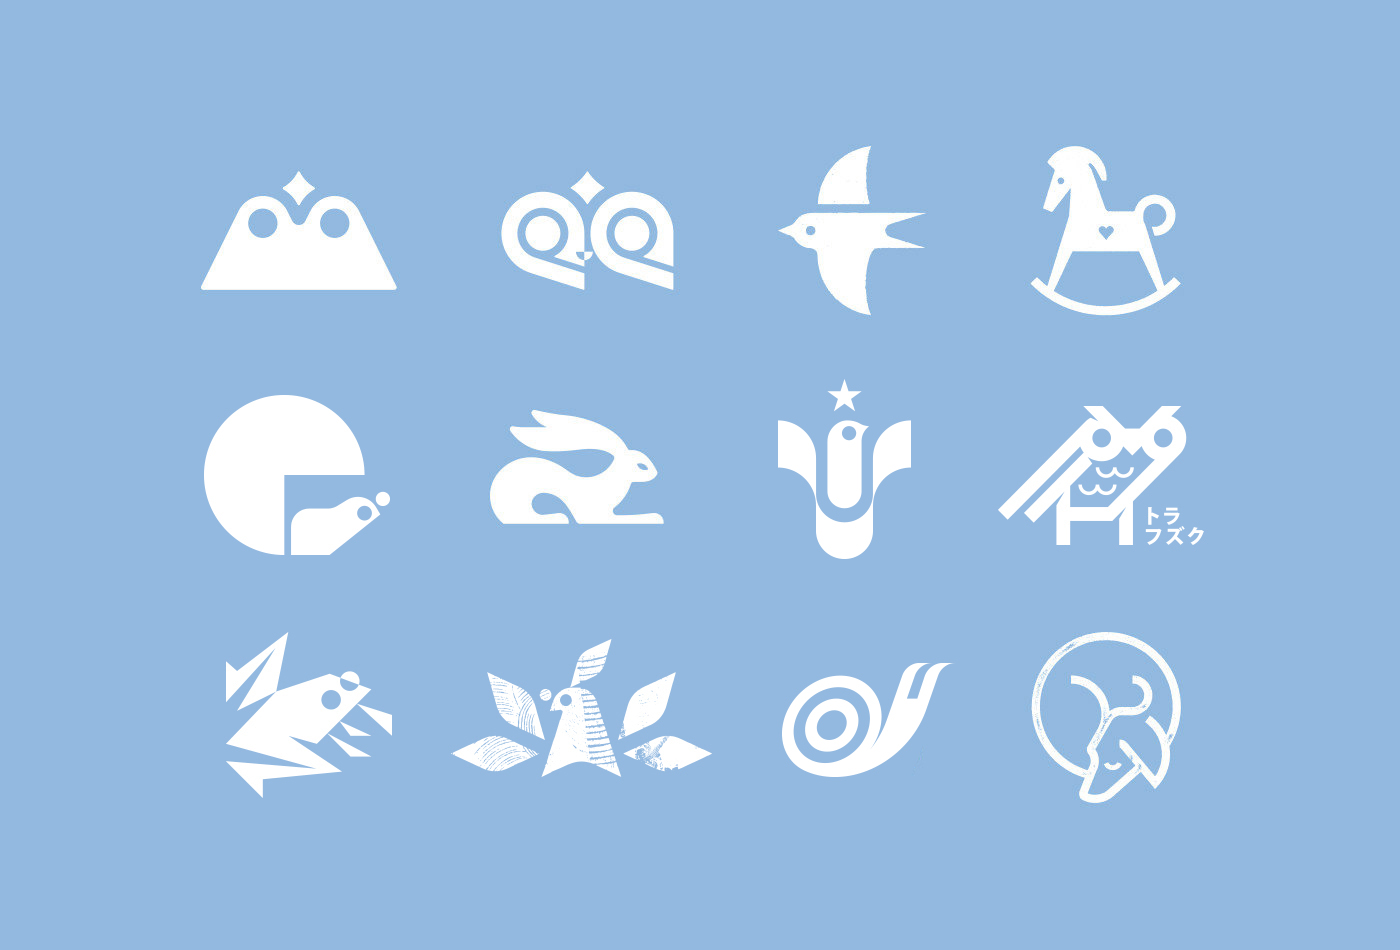 C-logo-symbol-logos-pictogram-marks-trademarks-trademark-glyph-icon-icons-logotype-collection-vacaliebres-birds-fukuro-aomori-squirrel-snail